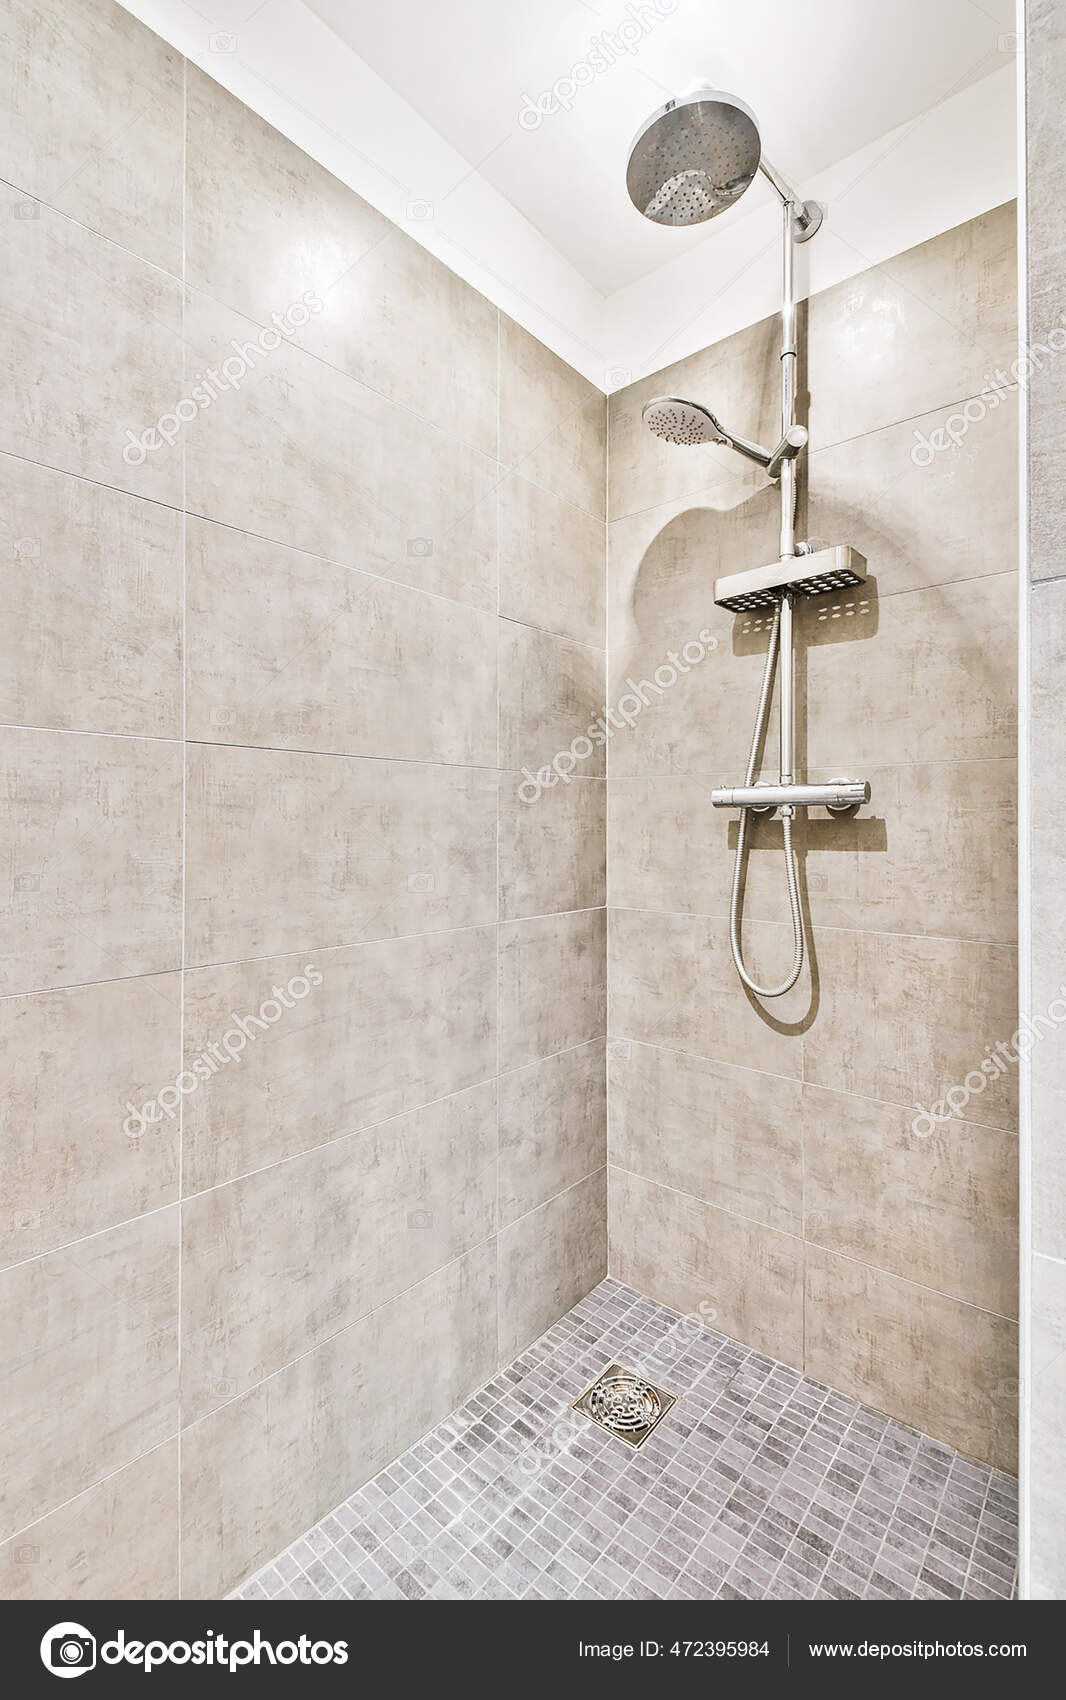 Fotos de Grifo de ducha en baño de azulejos - Imagen de © procontributors  #472395984